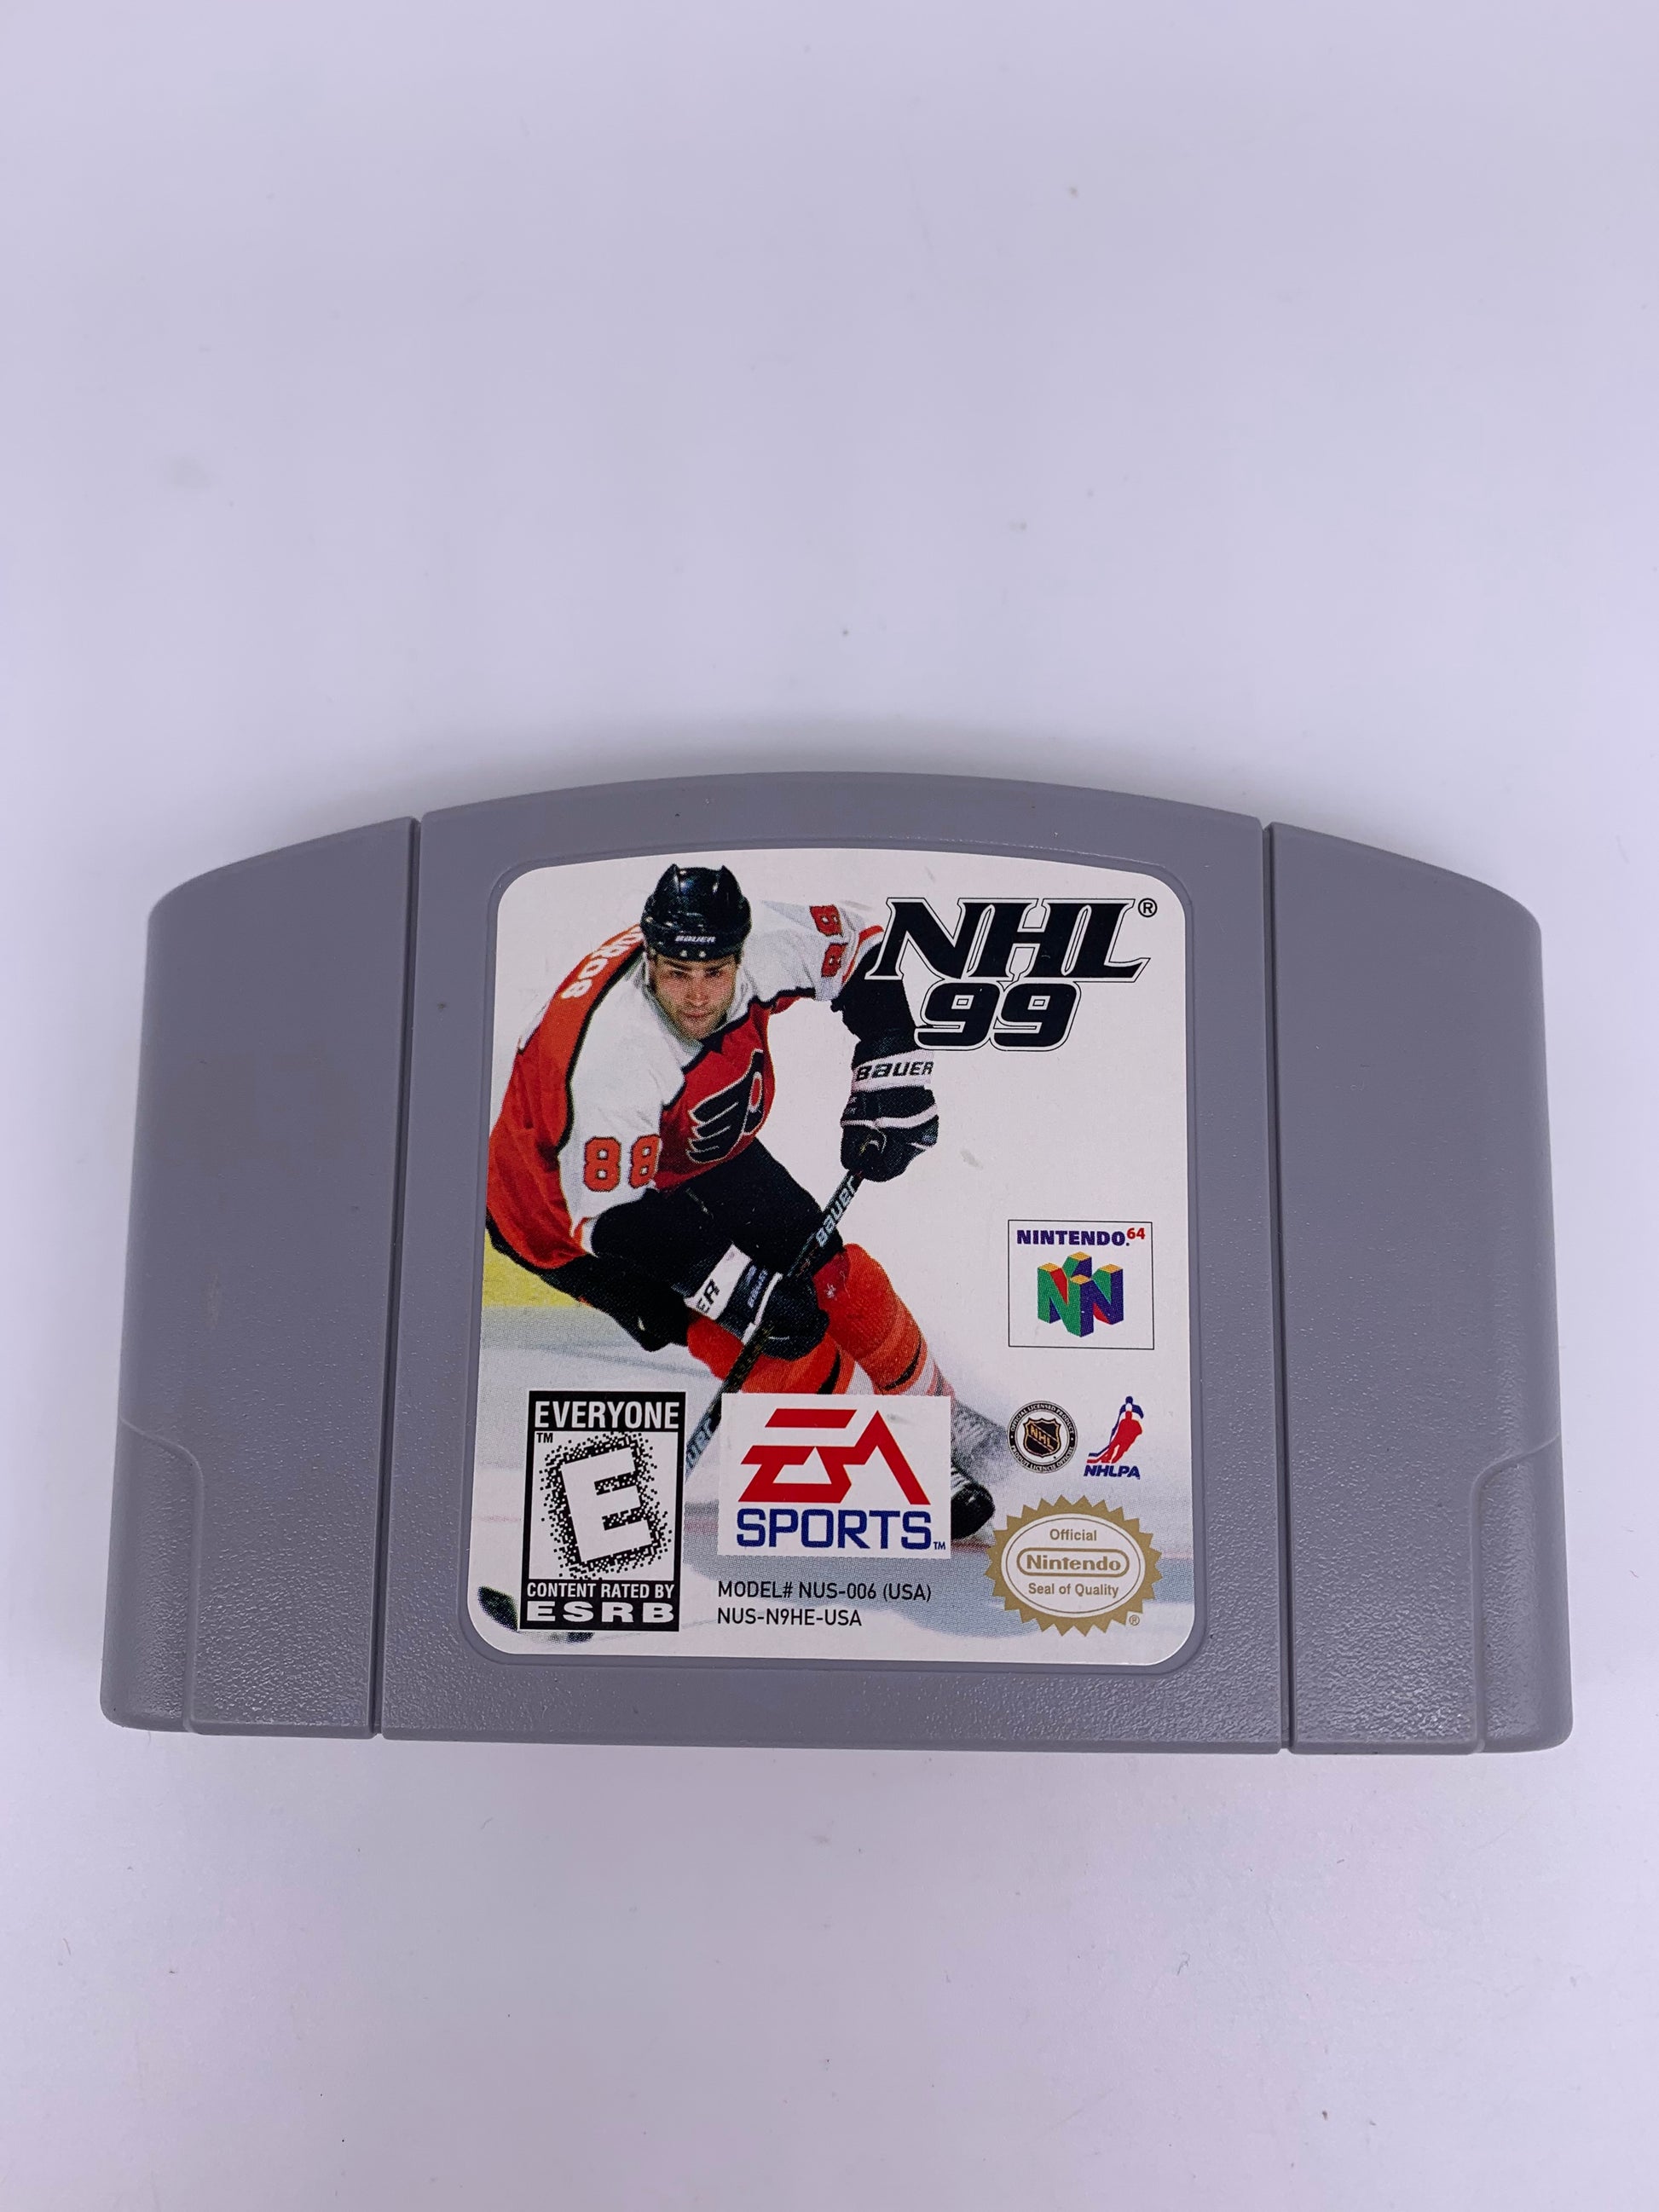 PiXEL-RETRO.COM : NINTENDO 64 (N64) GAME NTSC NHL 99